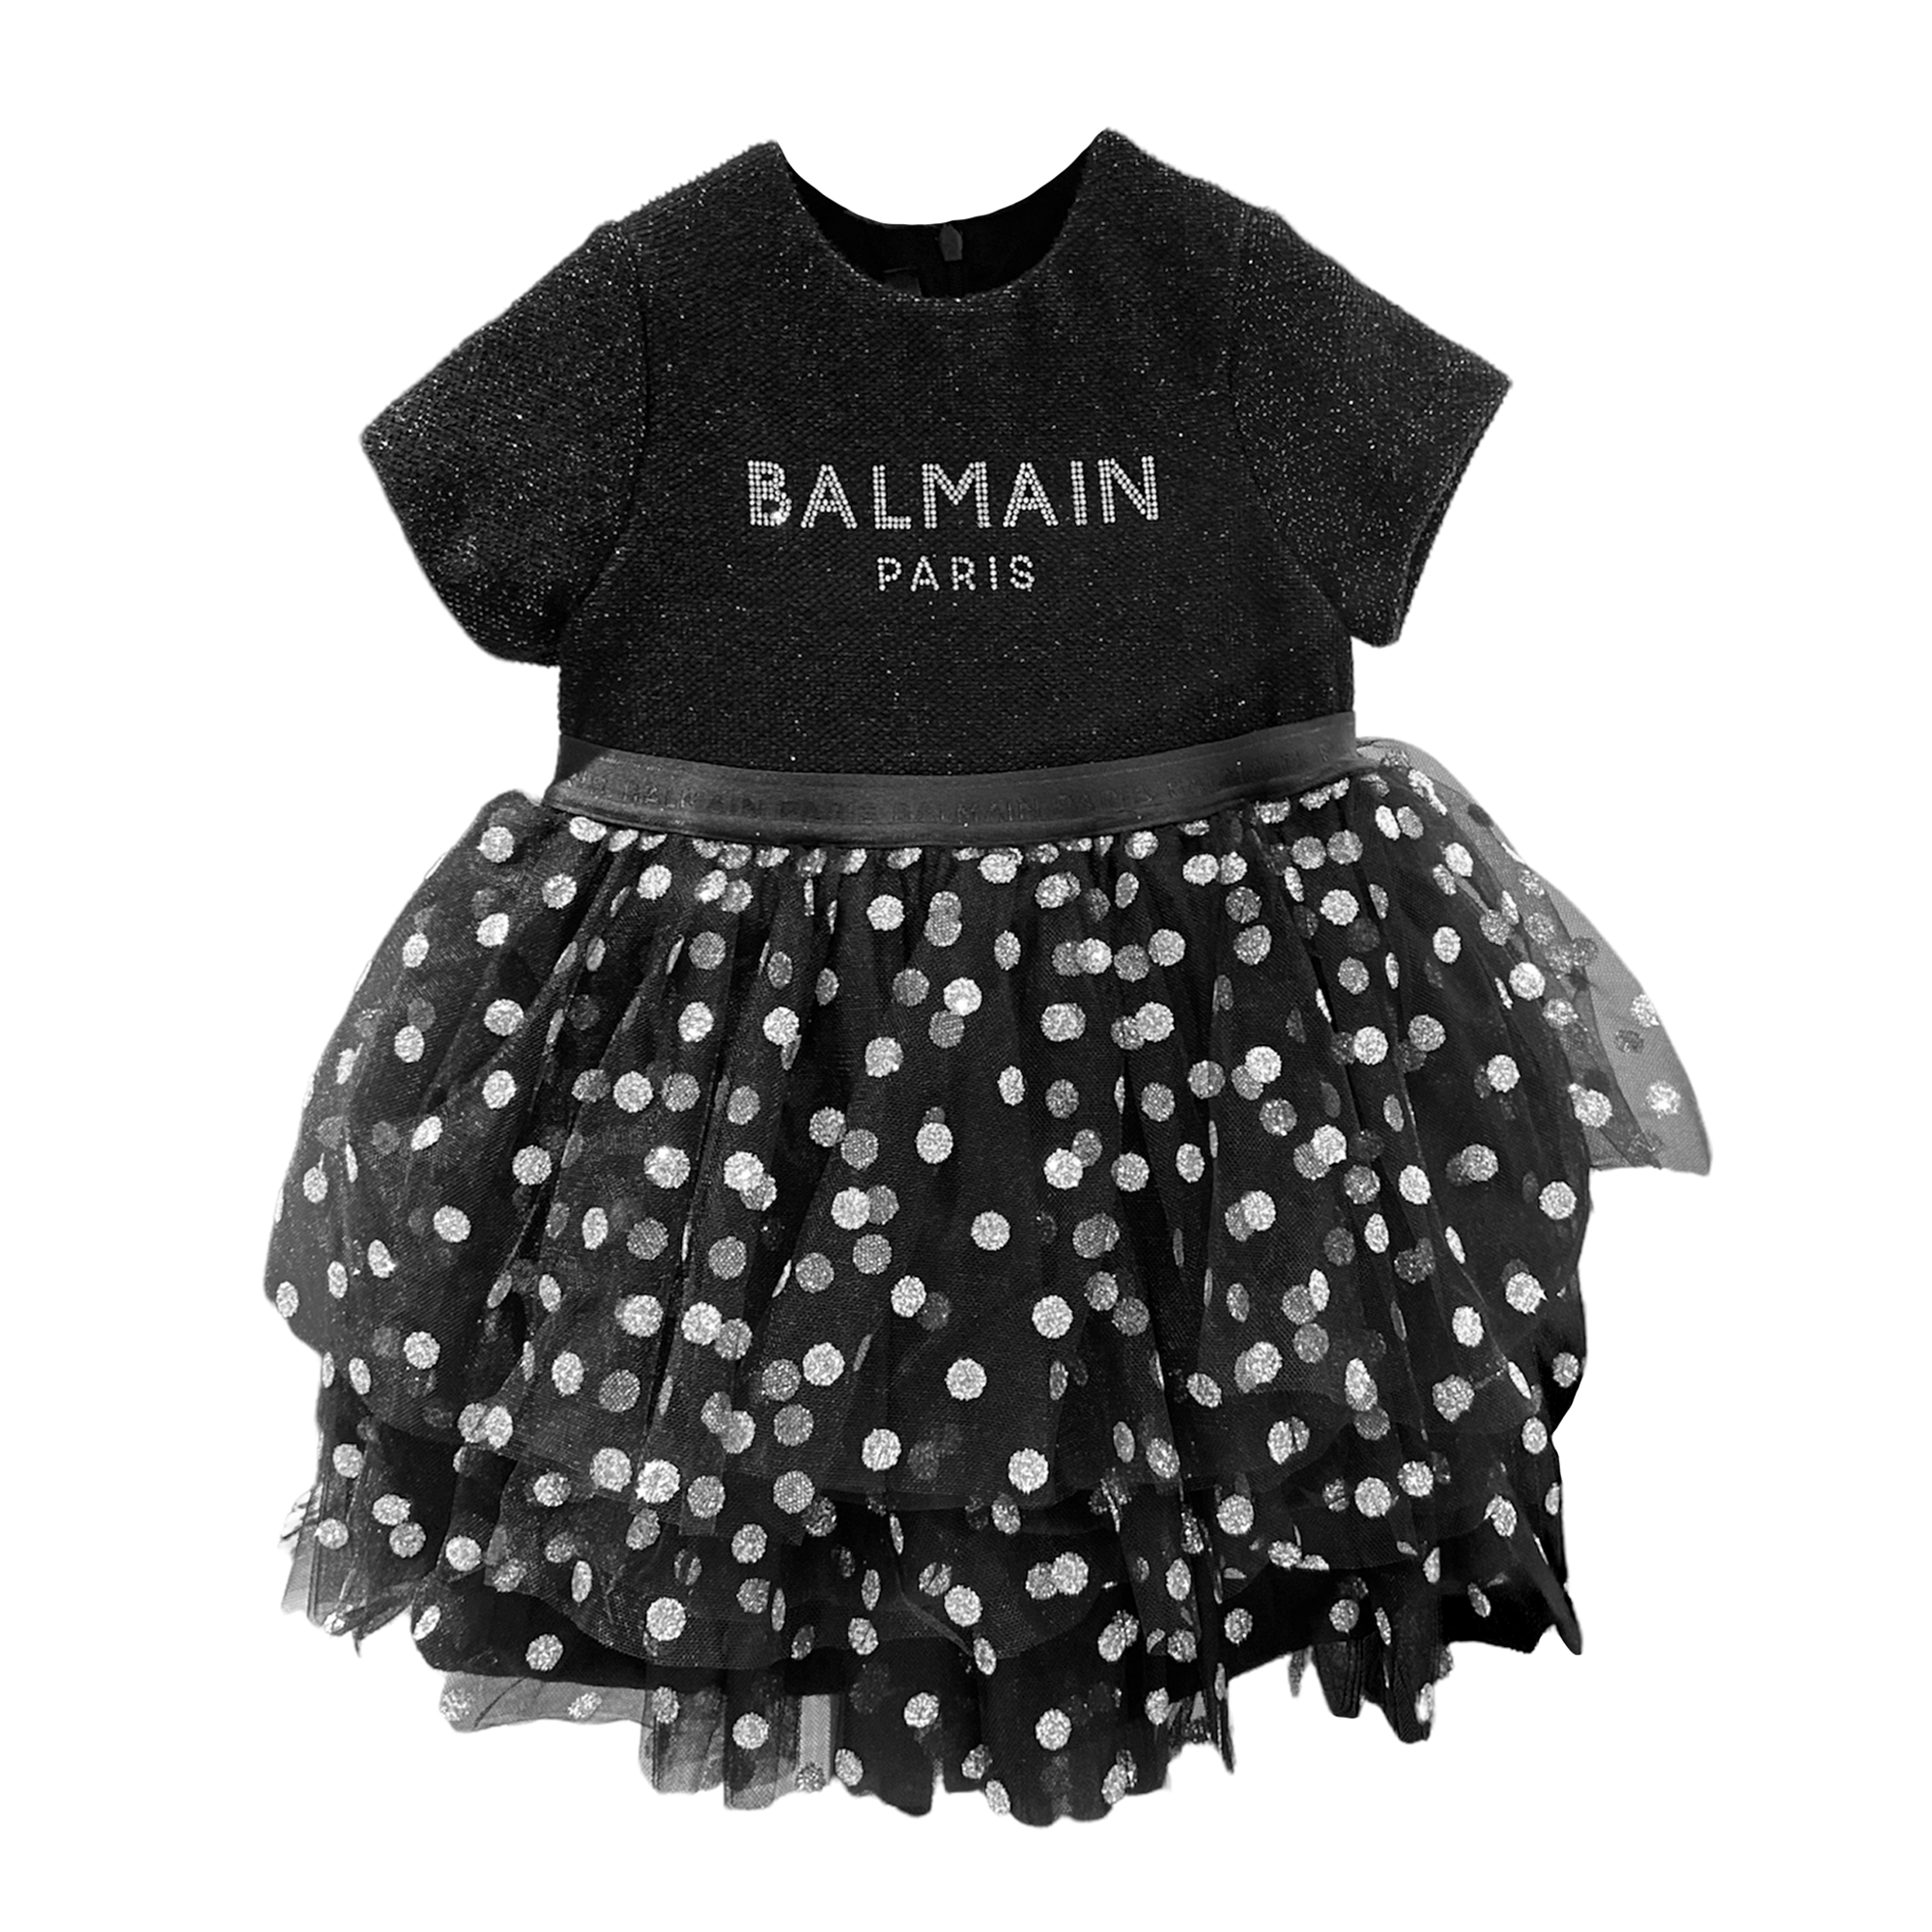 Balmain Baby Girls Polka Dot Dress